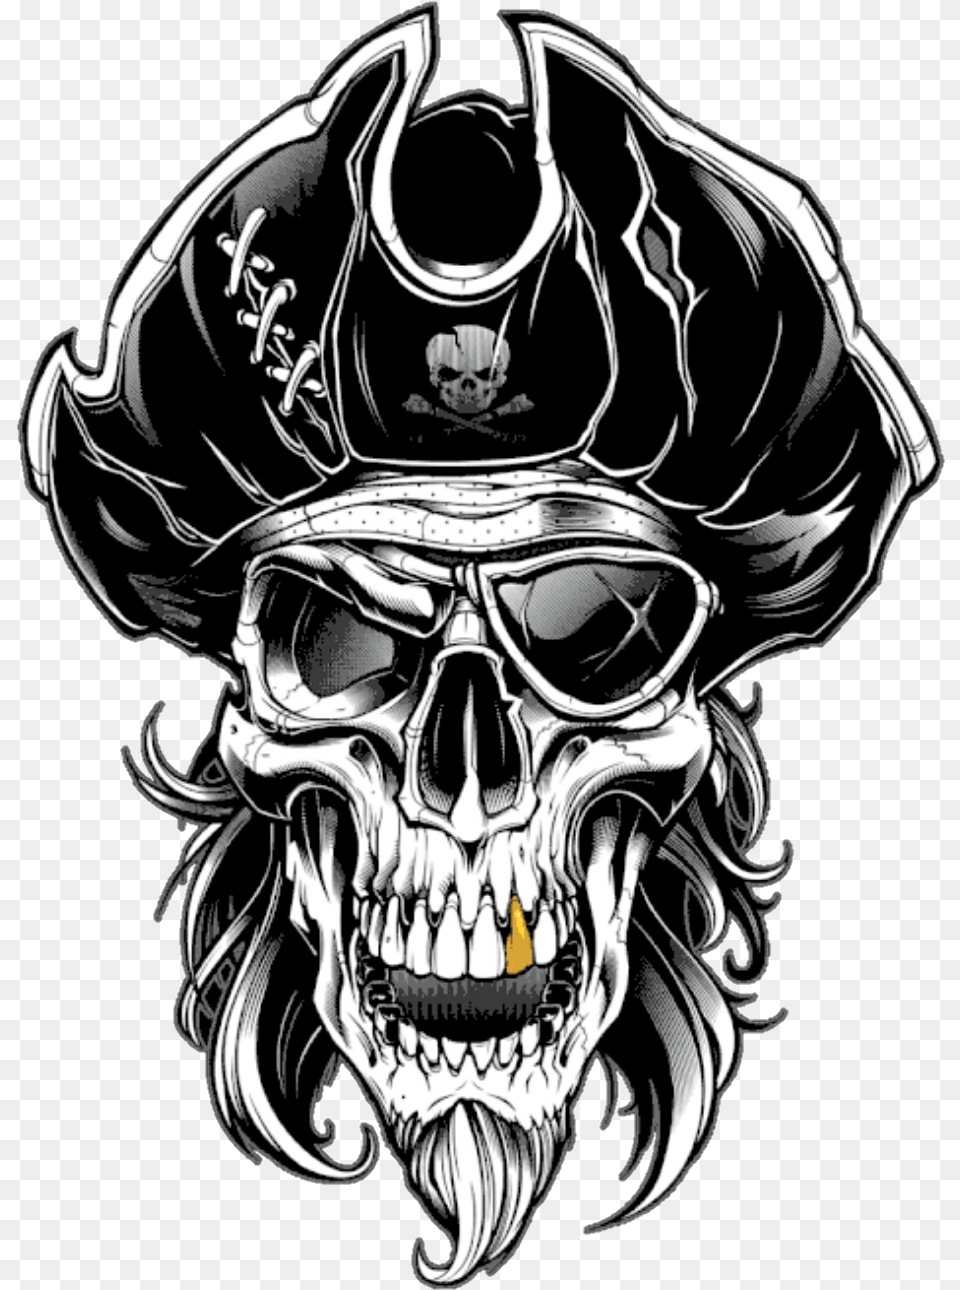 Pirate Skull Pirata Caveira Crnio Lucianoballack Pirate Skull, Person, Art Free Png